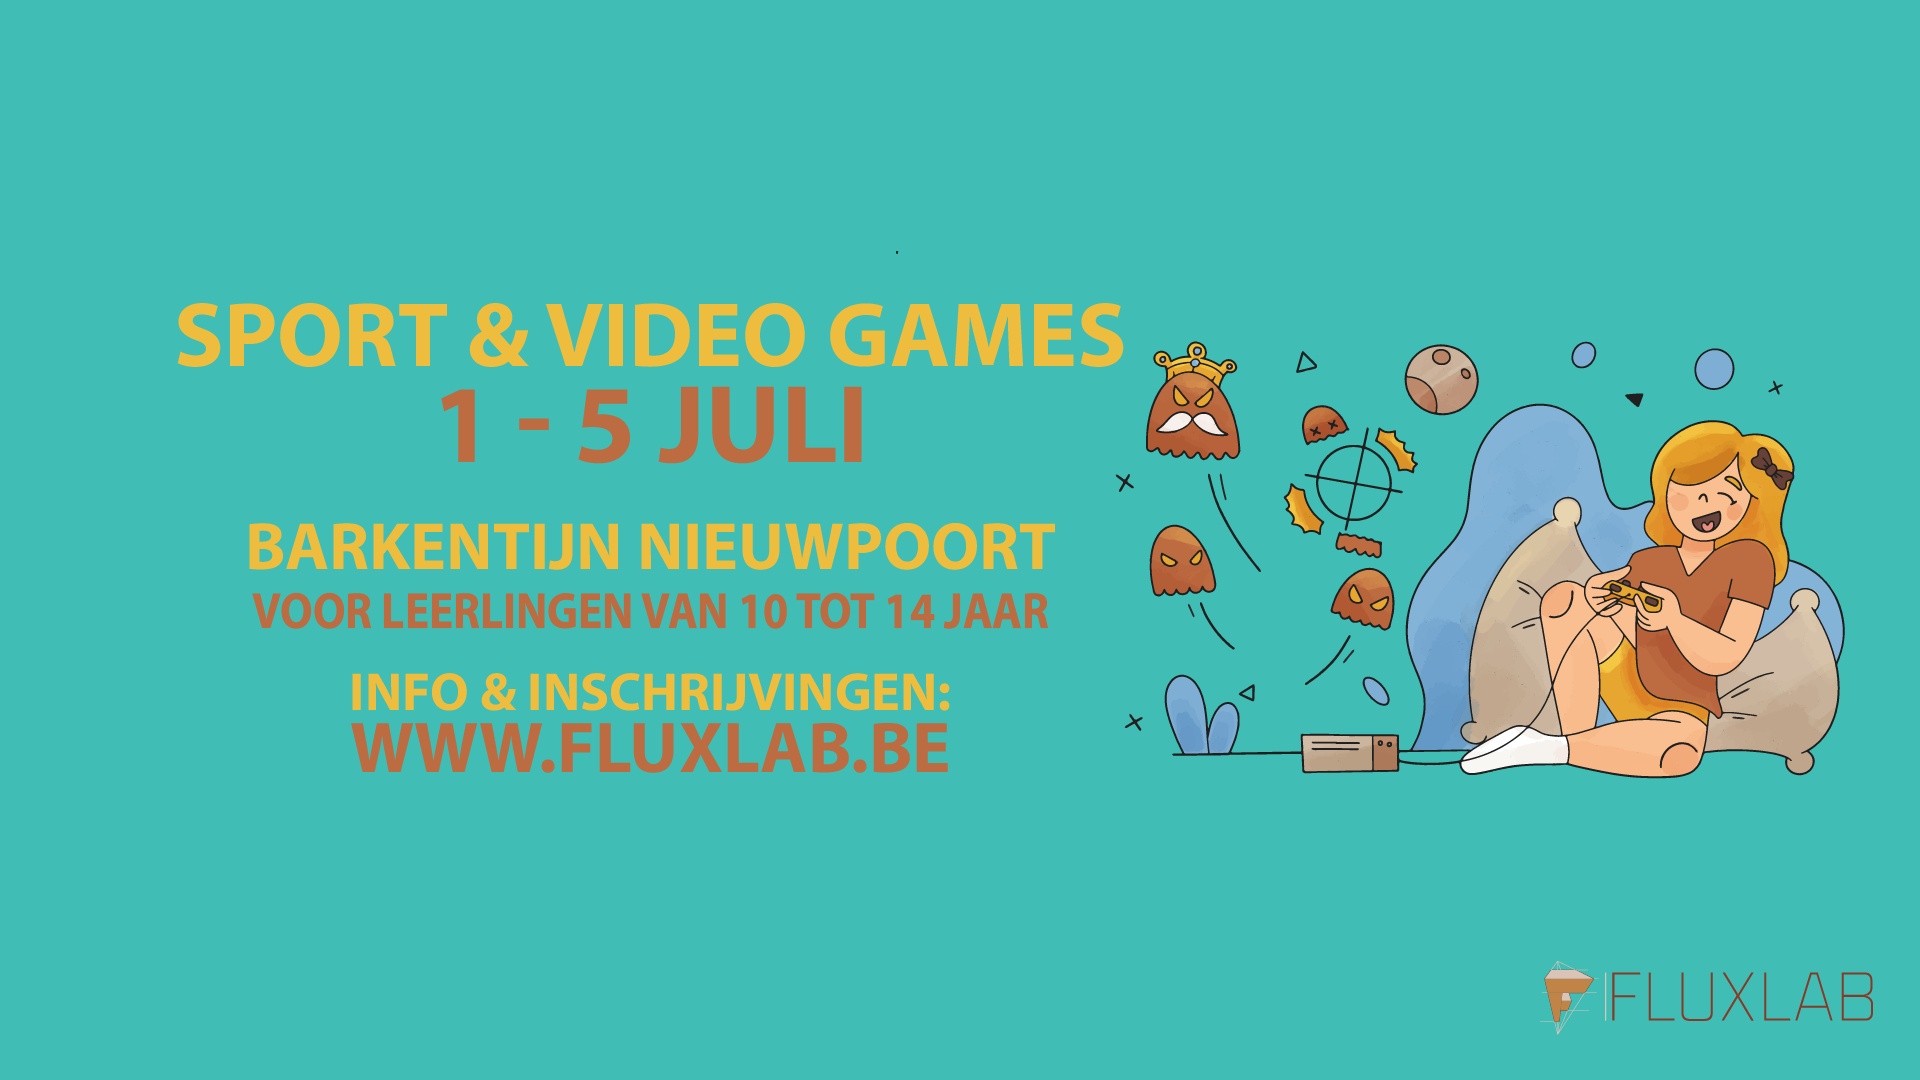 Sport & videogames Barkentijn Nieuwpoort Zomer